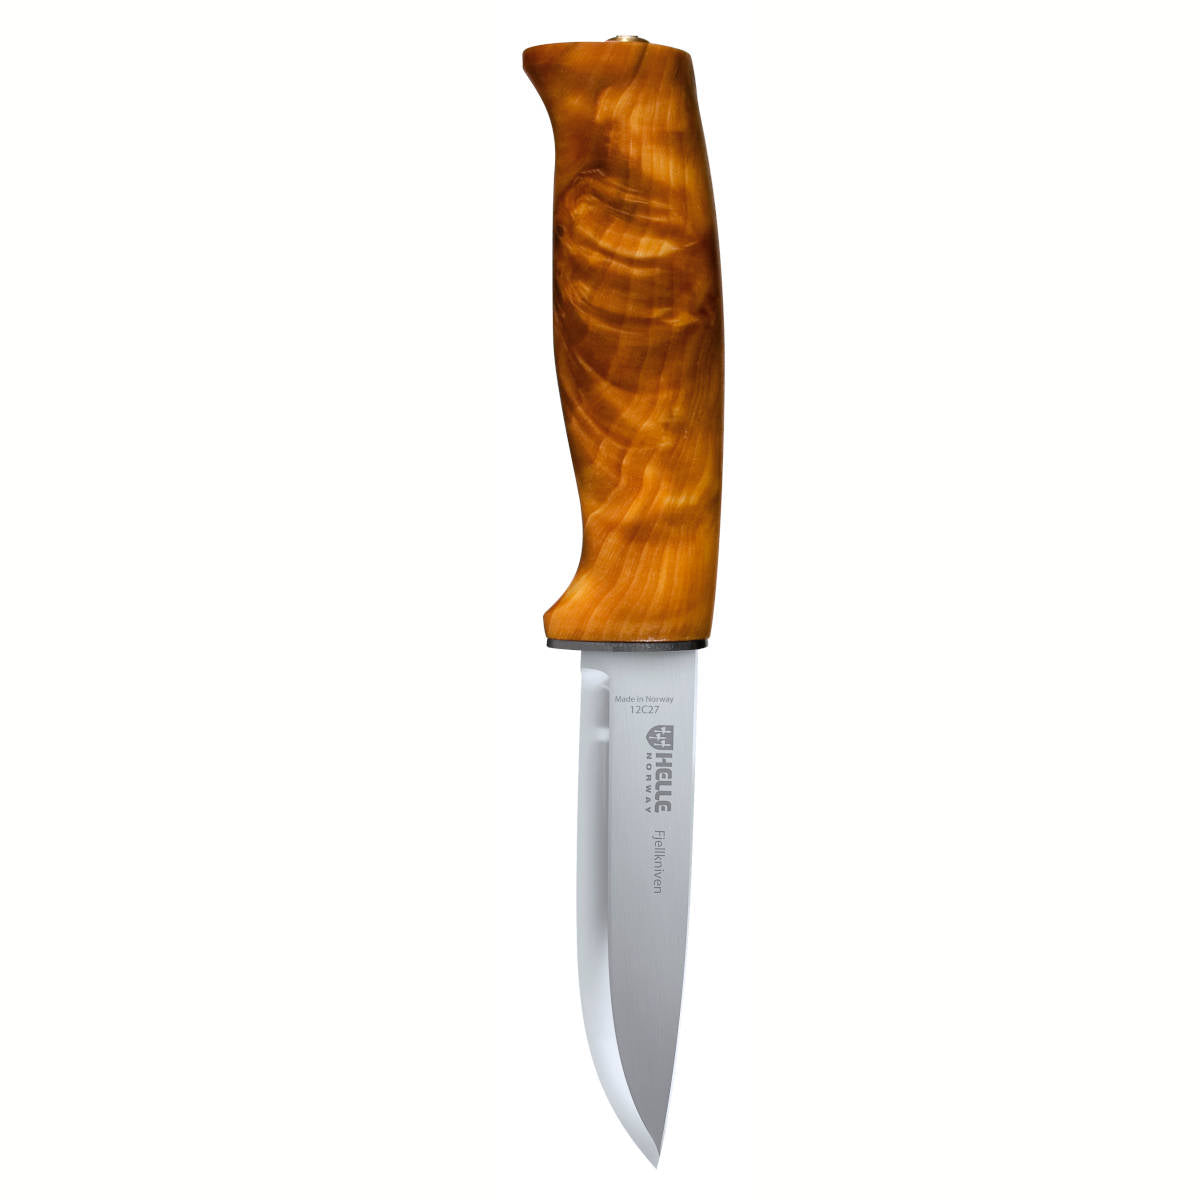 Helle Fossekallen Knife - Traditional Field Knife.